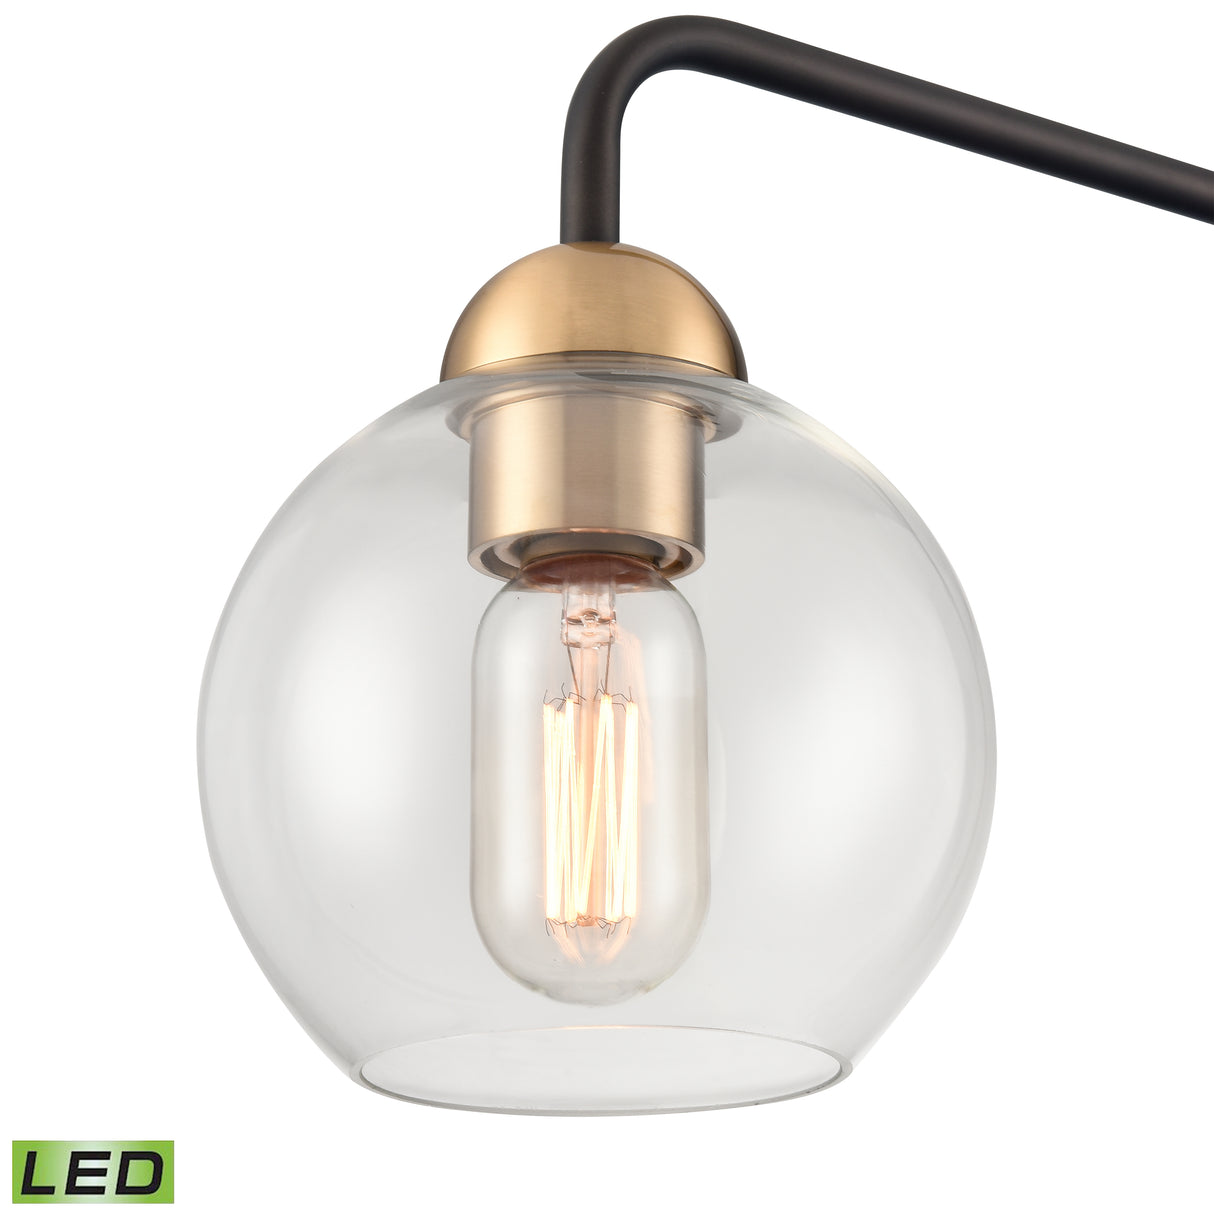 Elk S0019-11544-LED Boudreaux 64'' High 1-Light Floor Lamp - Aged Brass - Includes LED Bulb